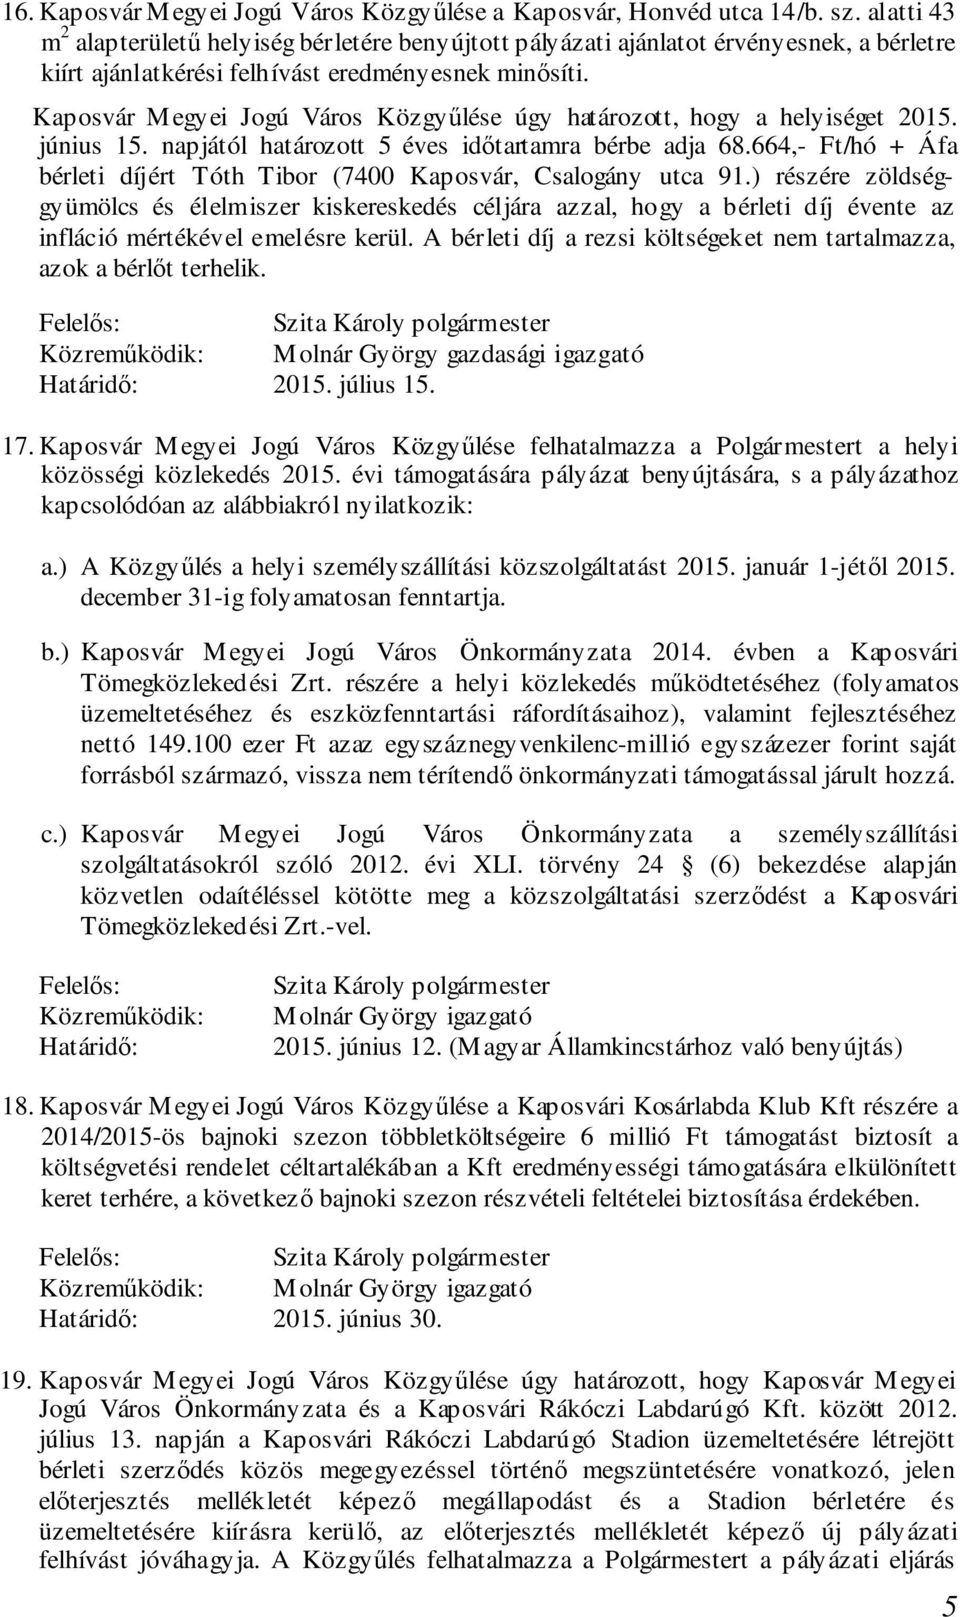 Kaposvár Megyei Jogú Város Közgyűlése úgy határozott, hogy a helyiséget 2015. június 15. napjától határozott 5 éves időtartamra bérbe adja 68.